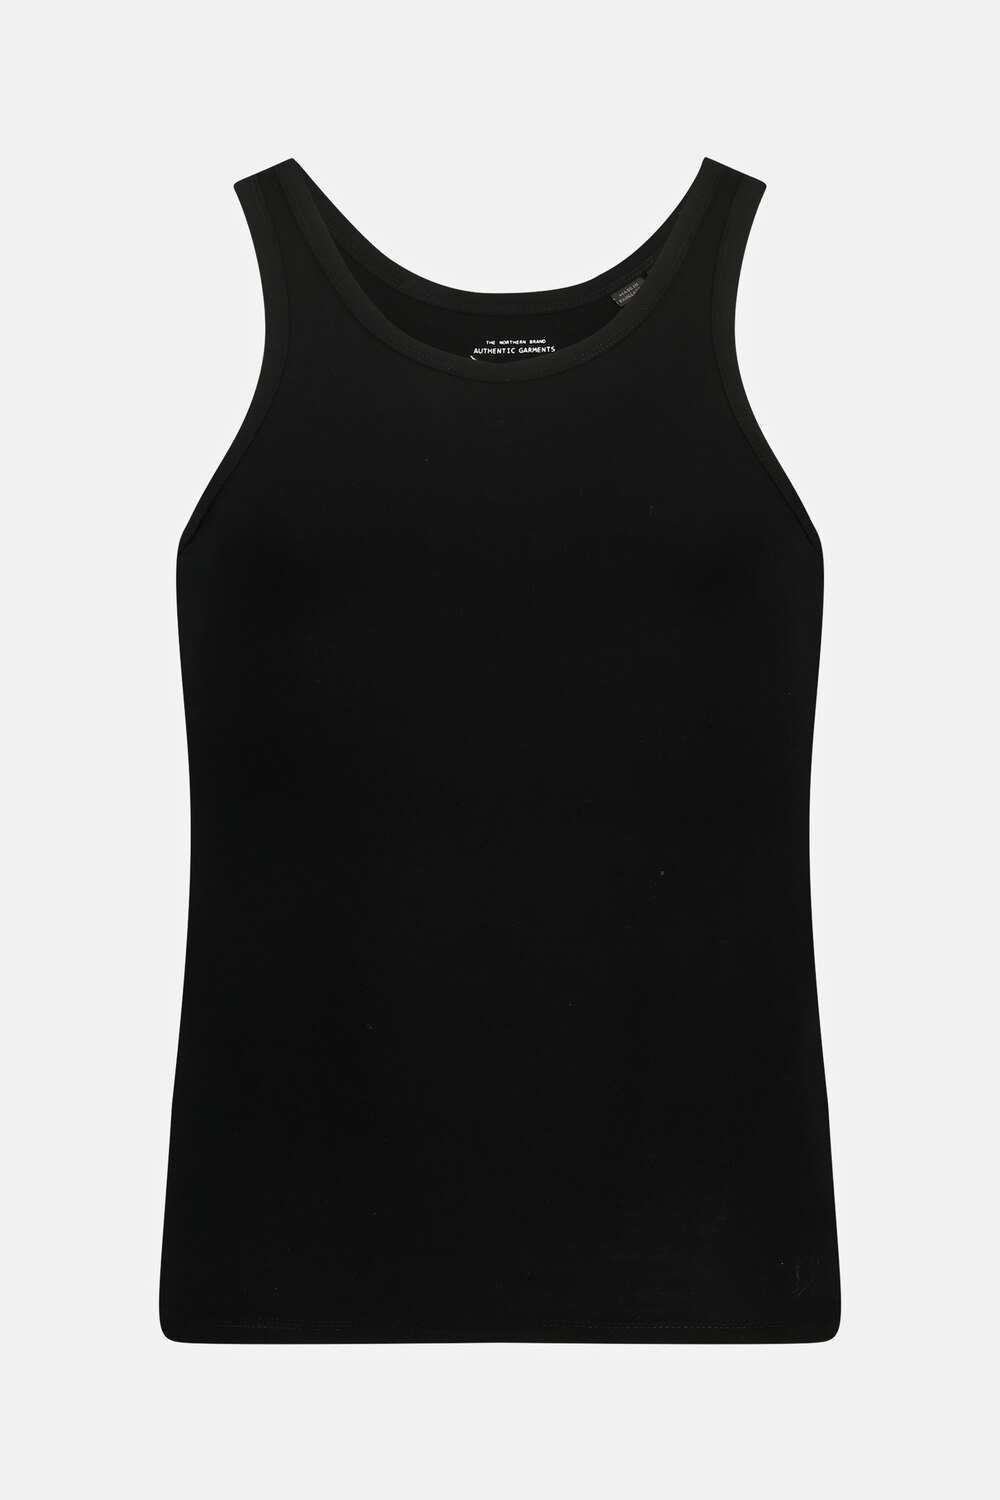 Grote Maten Onderhemd, Heren, zwart, Maat: L, Katoen, JP1880